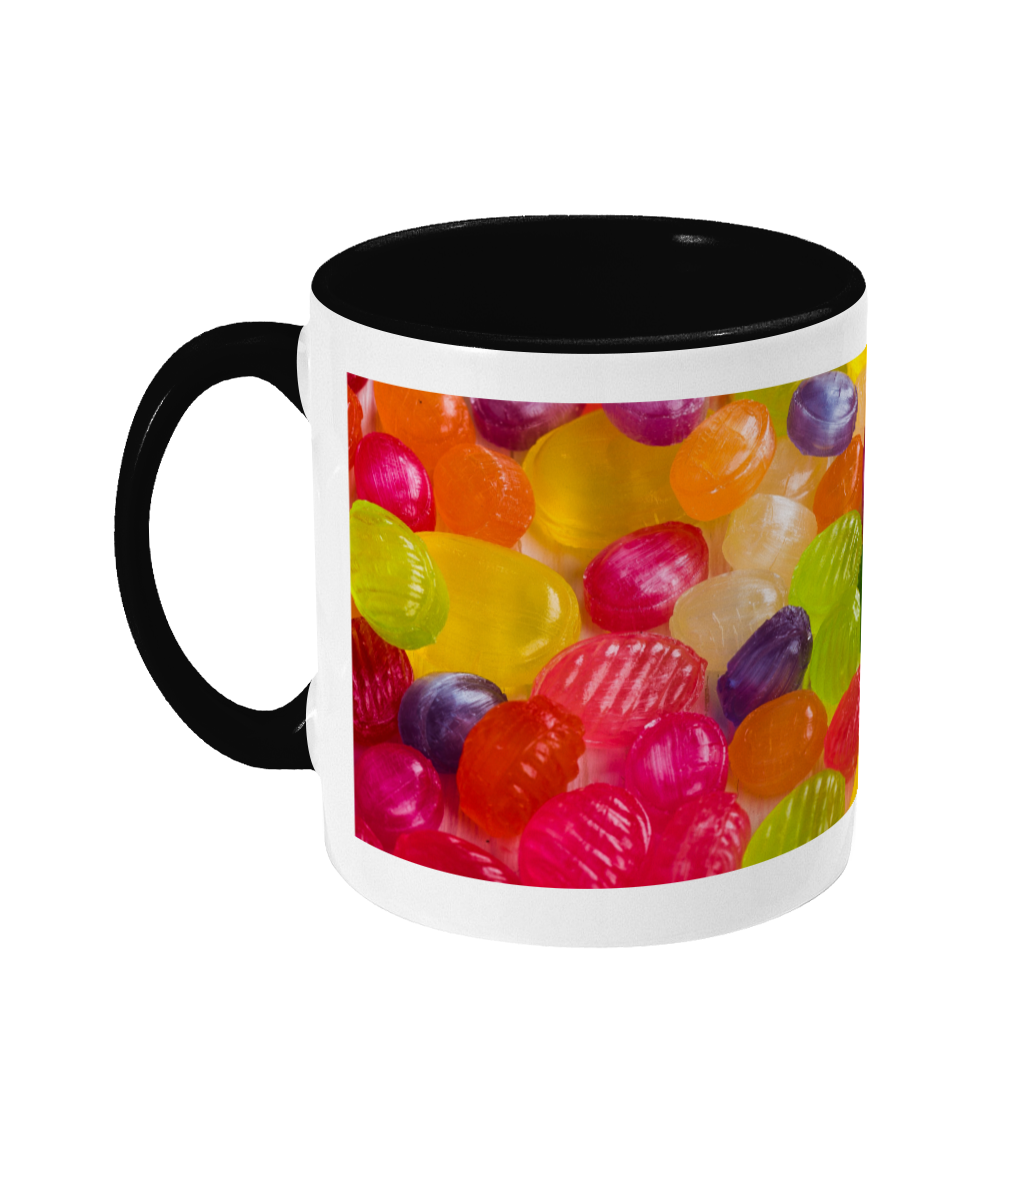 Sweet Shop 'Boiled Sweets' Mug